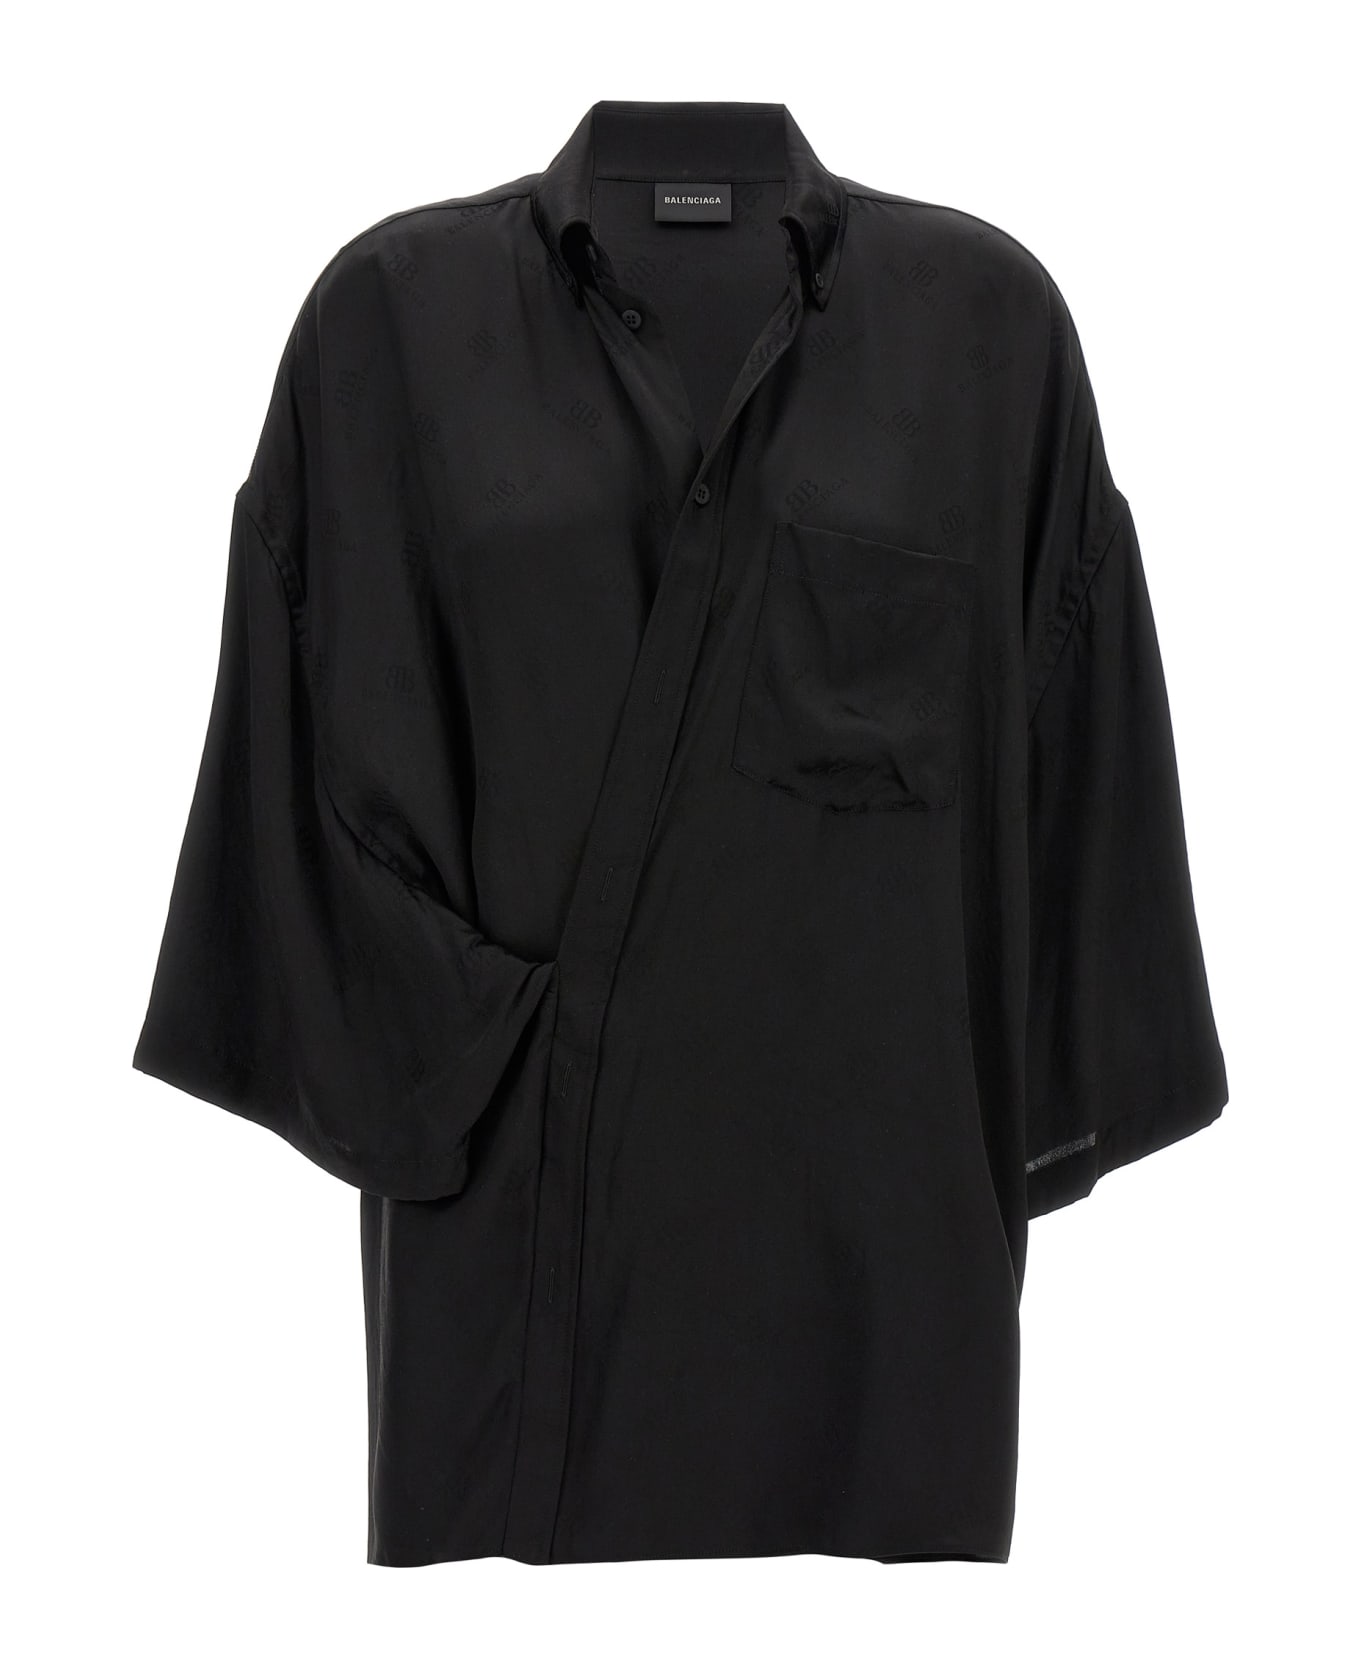 Balenciaga 'wrap' Shirt - Black  